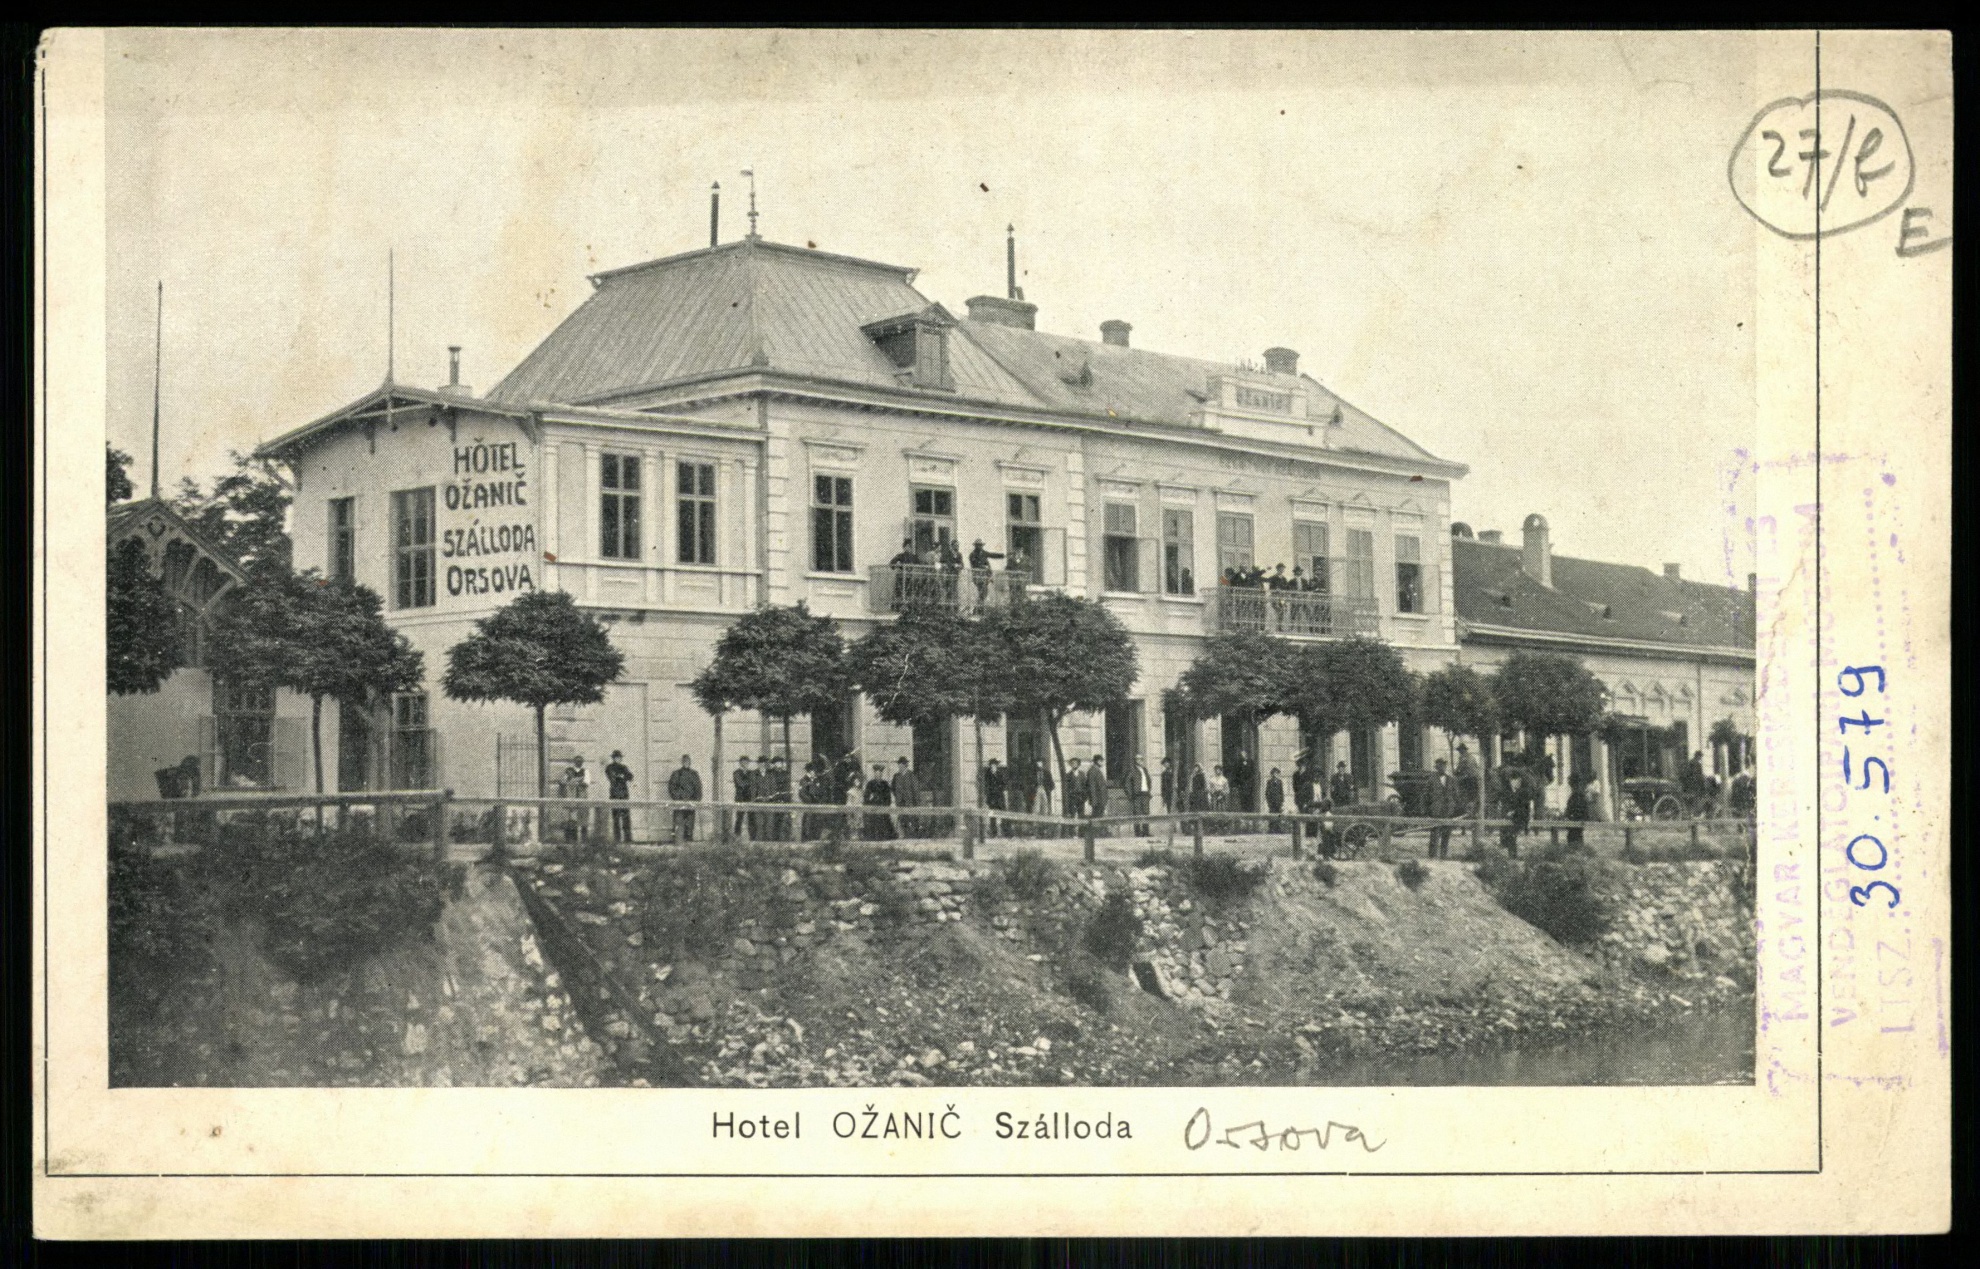 Orsova Hotel Ožanič szálloda (Magyar Kereskedelmi és Vendéglátóipari Múzeum CC BY-NC-ND)